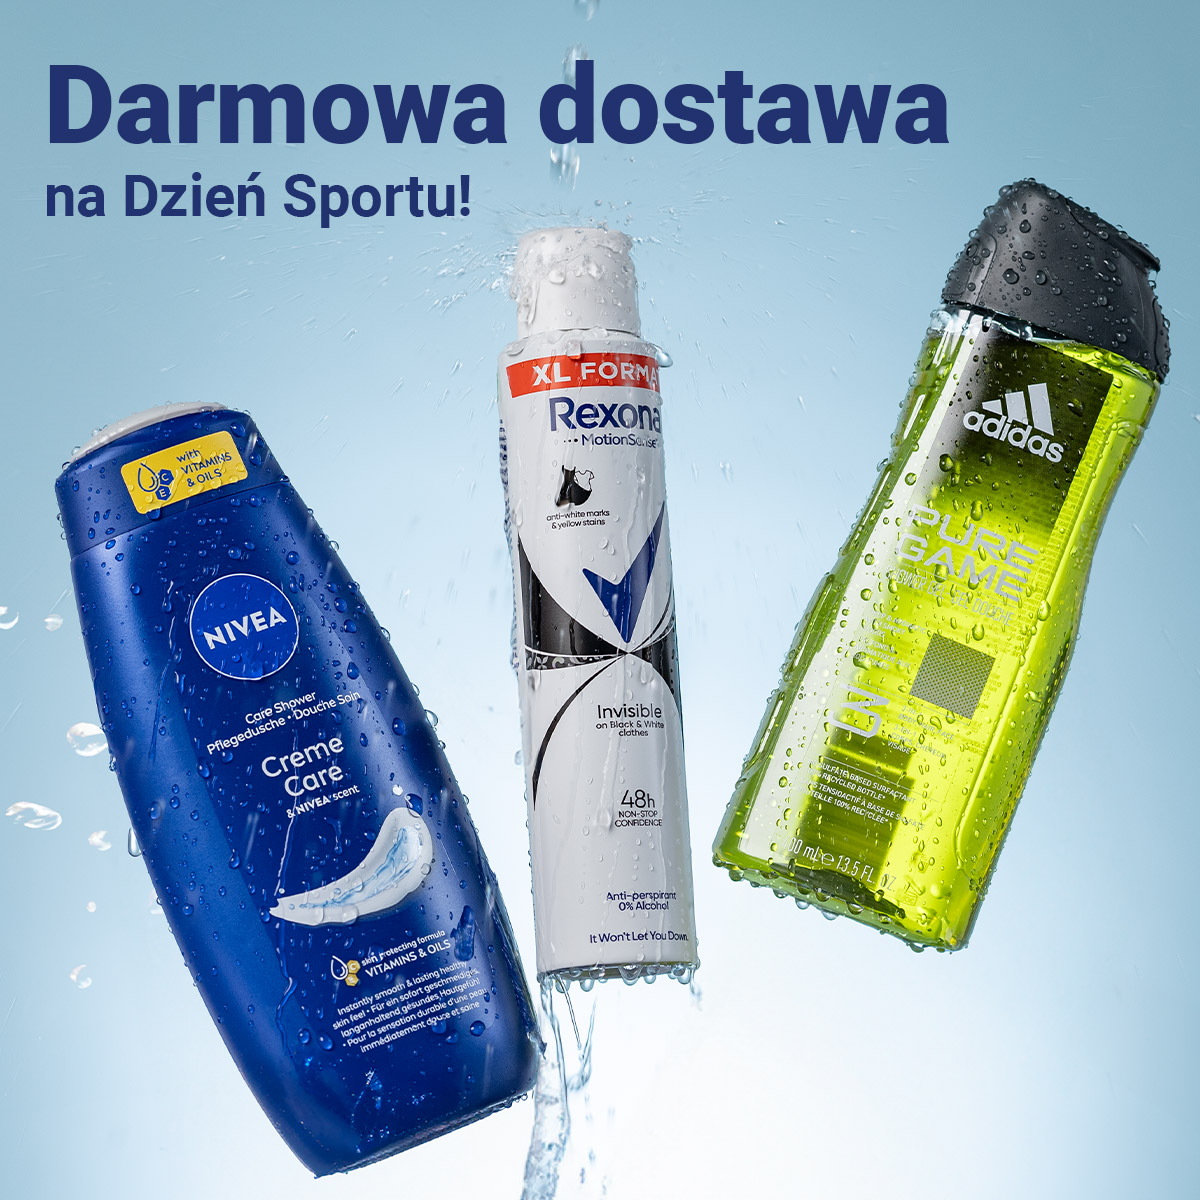 Darmowa dostawa zakupów z Rossmanna z okazji Międzynarodowego Dnia Sportu